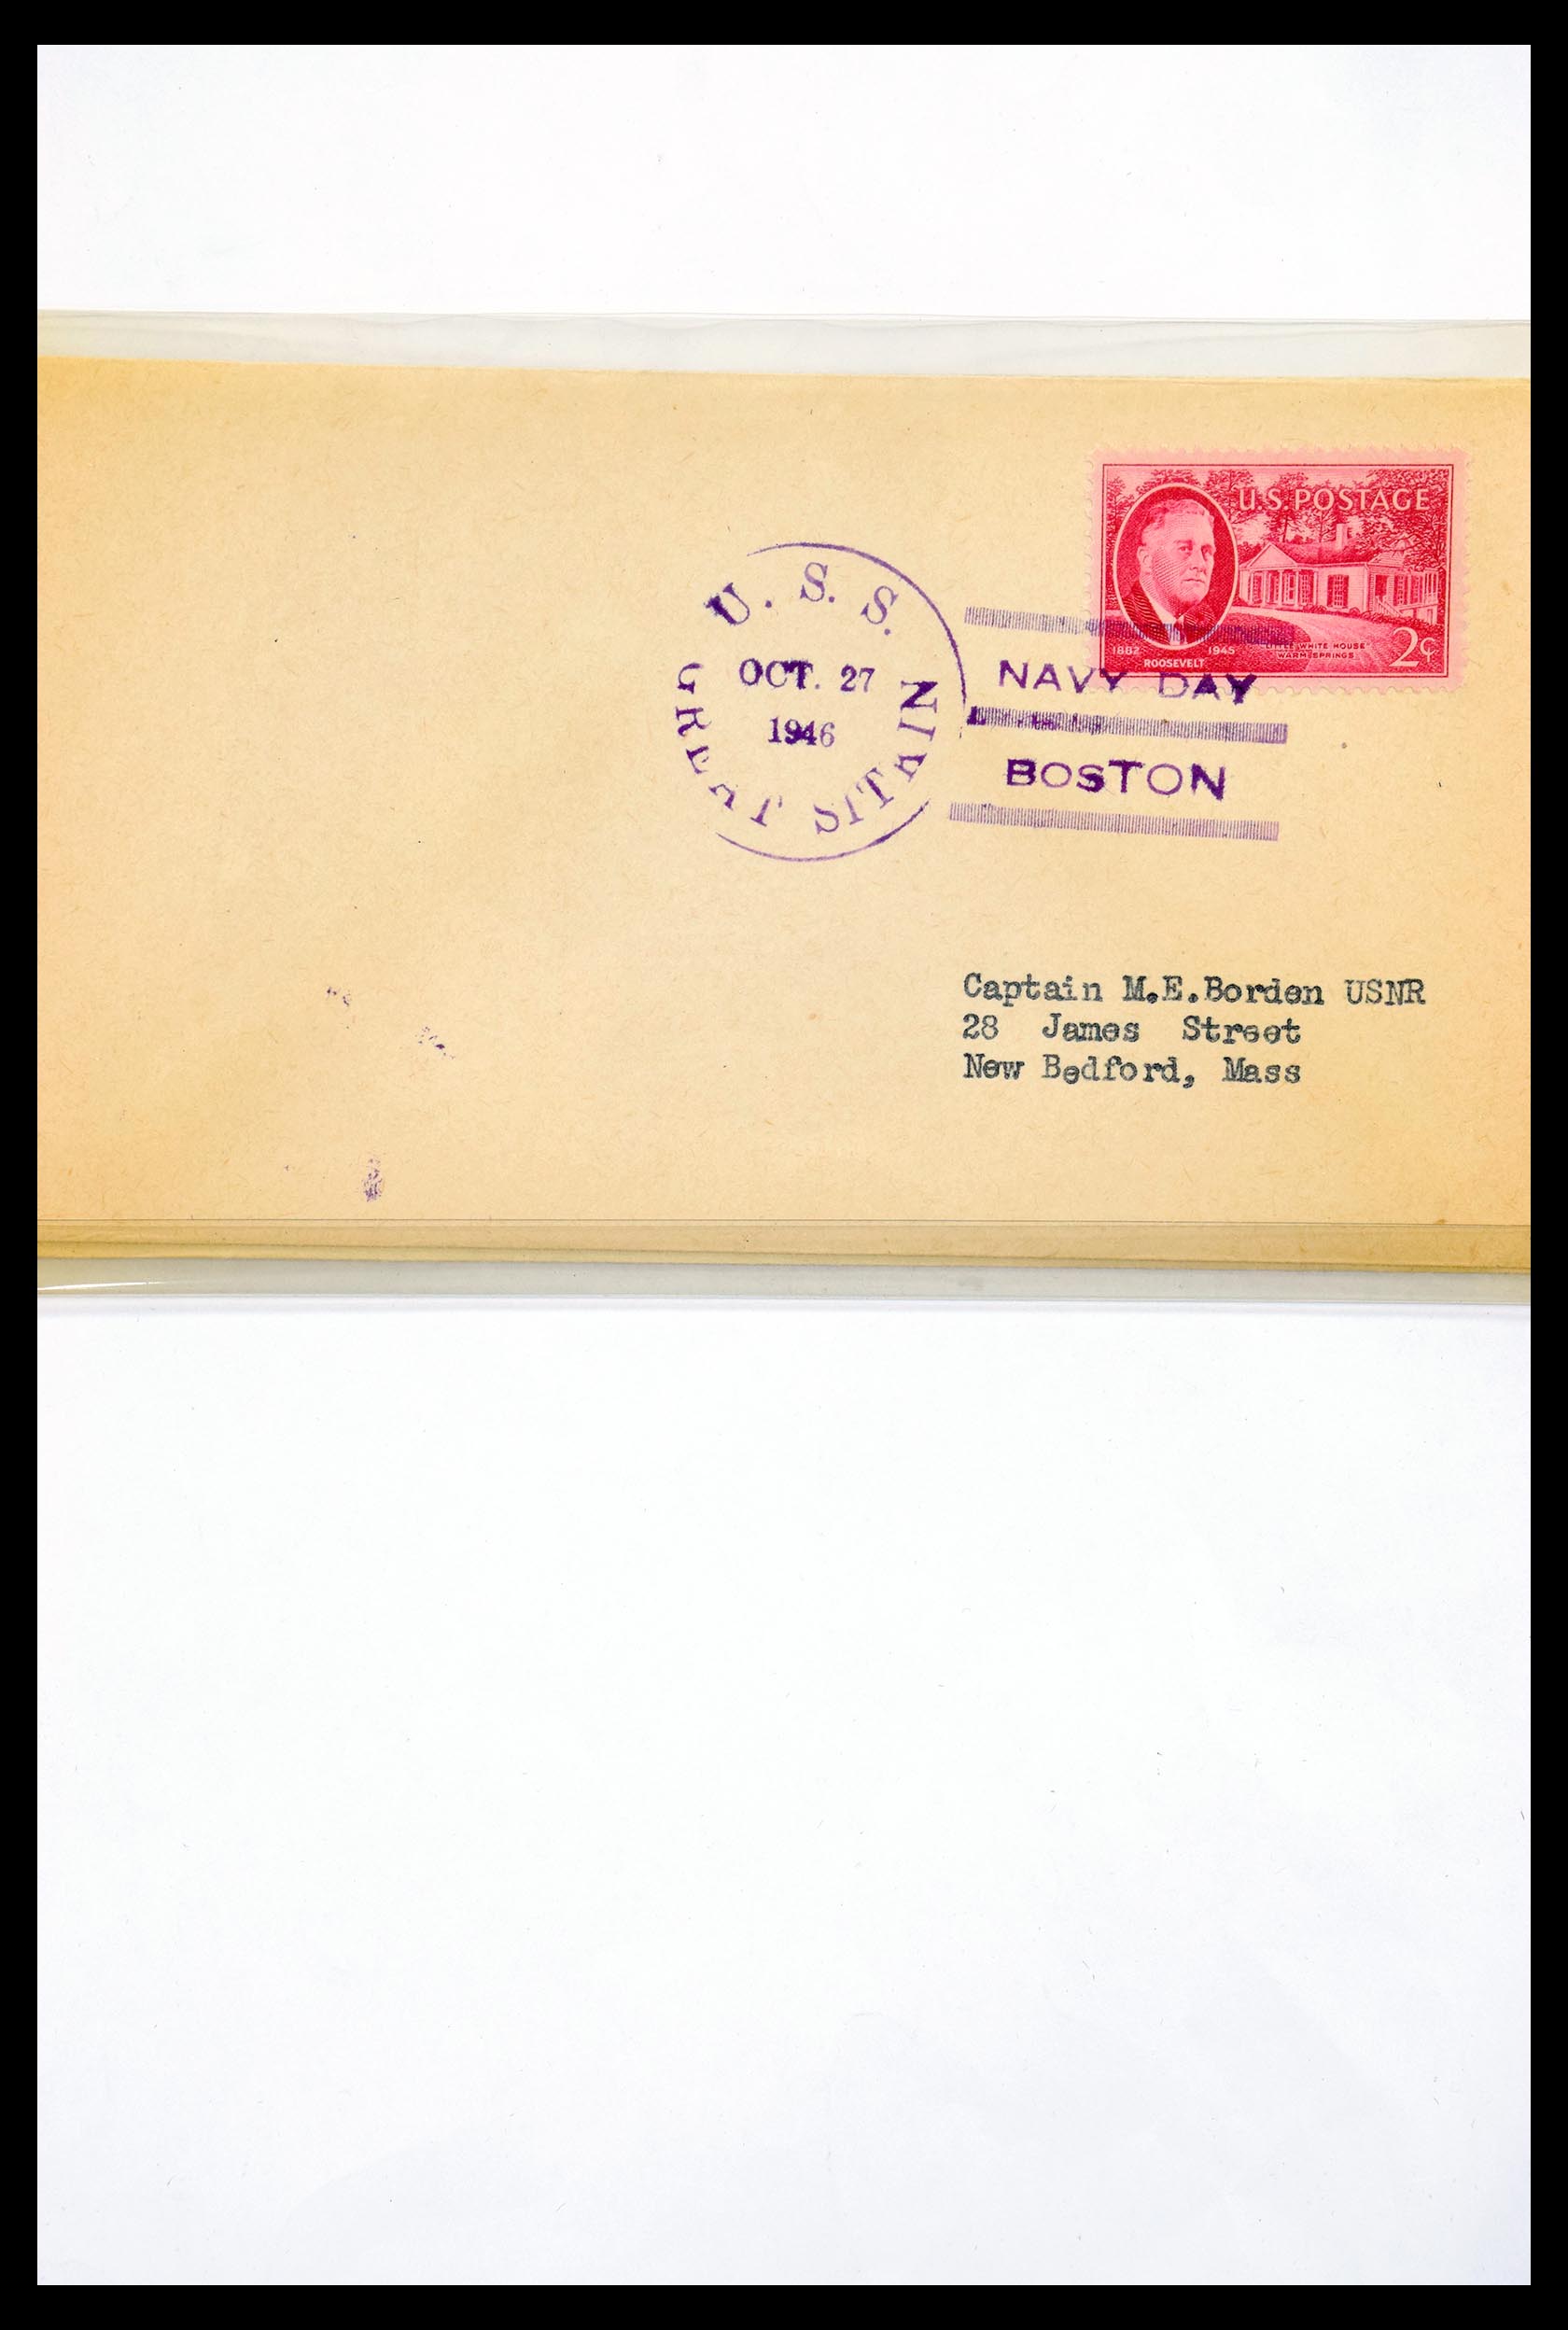 30341 301 - 30341 USA scheepspost brieven 1930-1970.